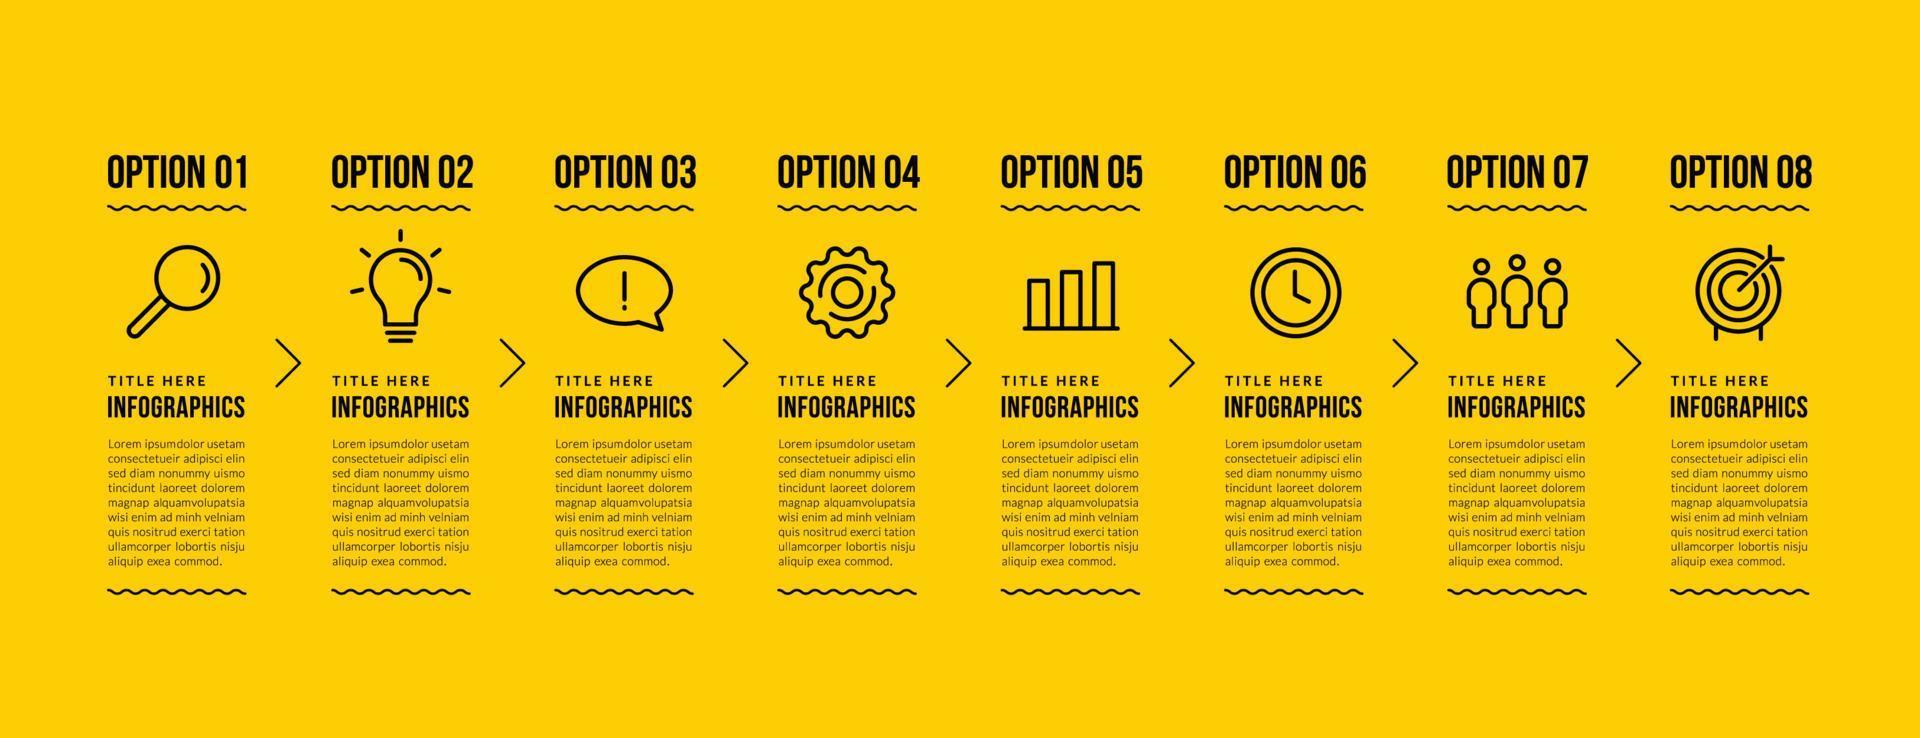 Business Infografik Template Design mit 8 Optionen, Business Data Visualization Steps Konzept, Thin Line Icons Style auf gelbem Hintergrund vektor